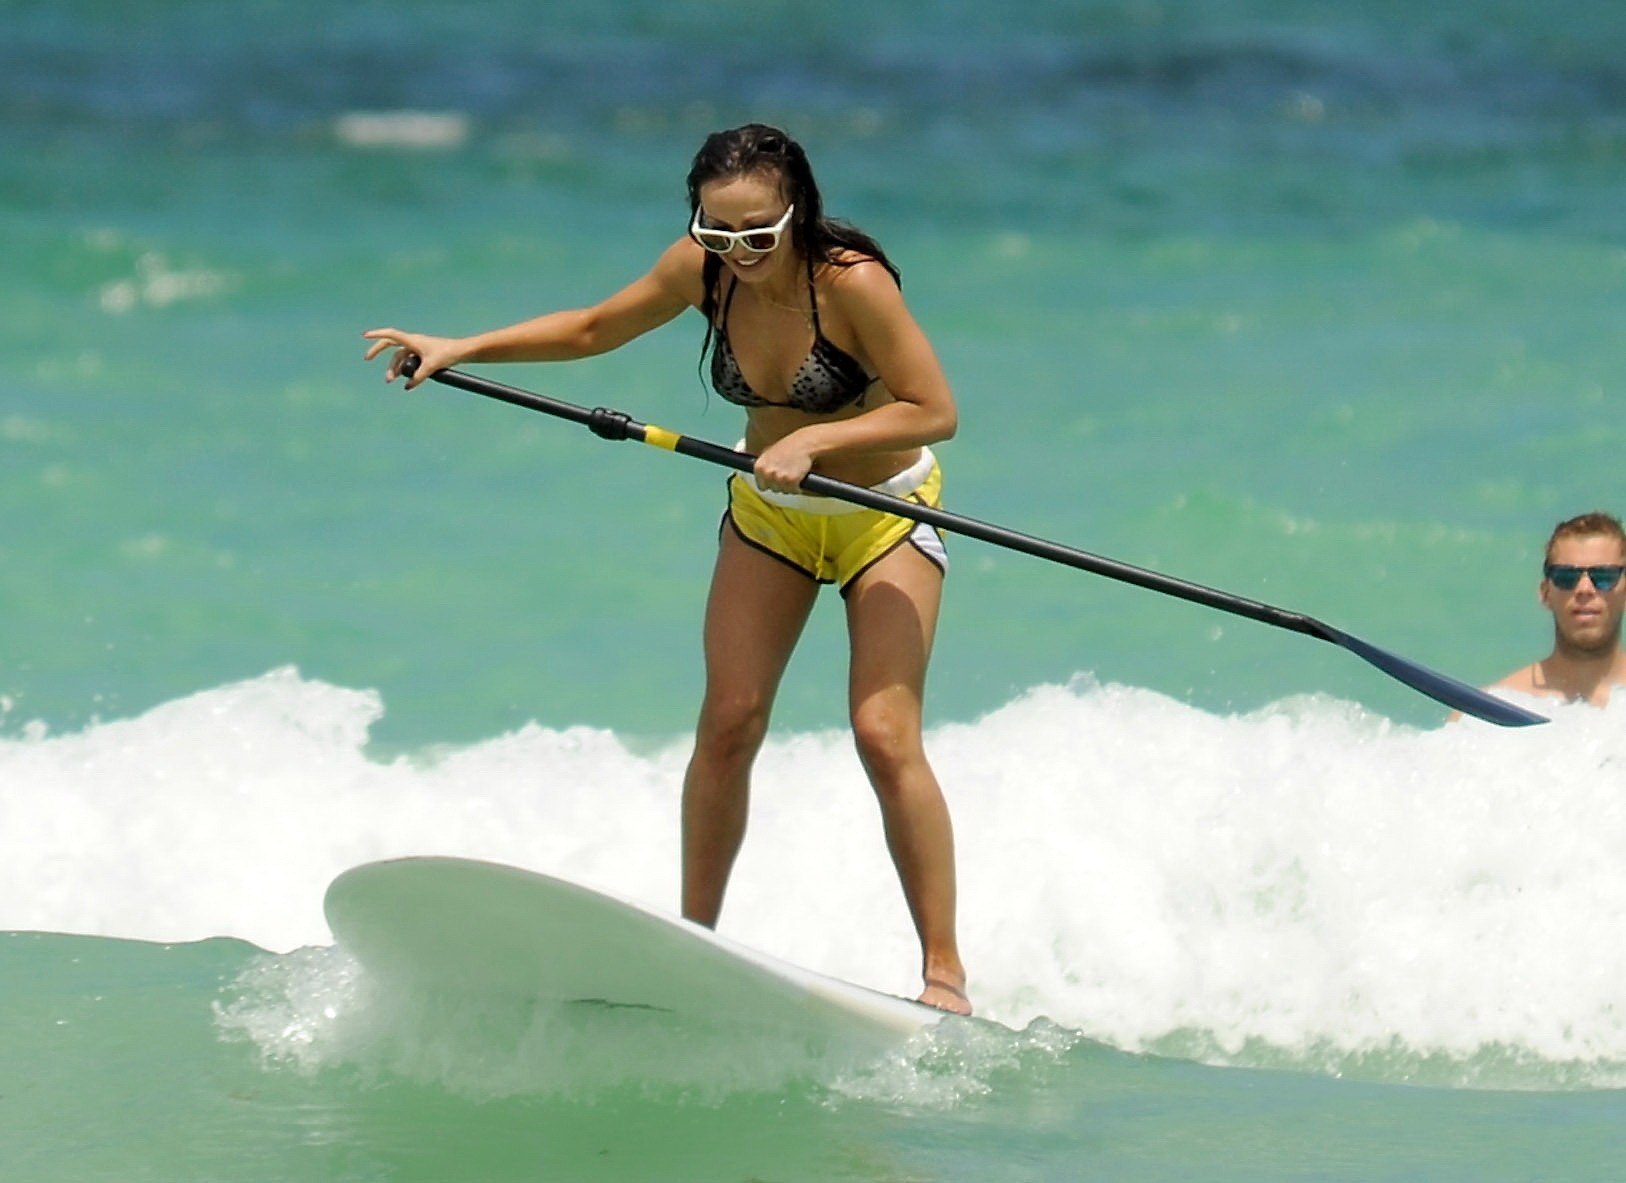 Karina smirnoff haciendo paddle surf en la playa de miami con un short en bikini
 #75256909